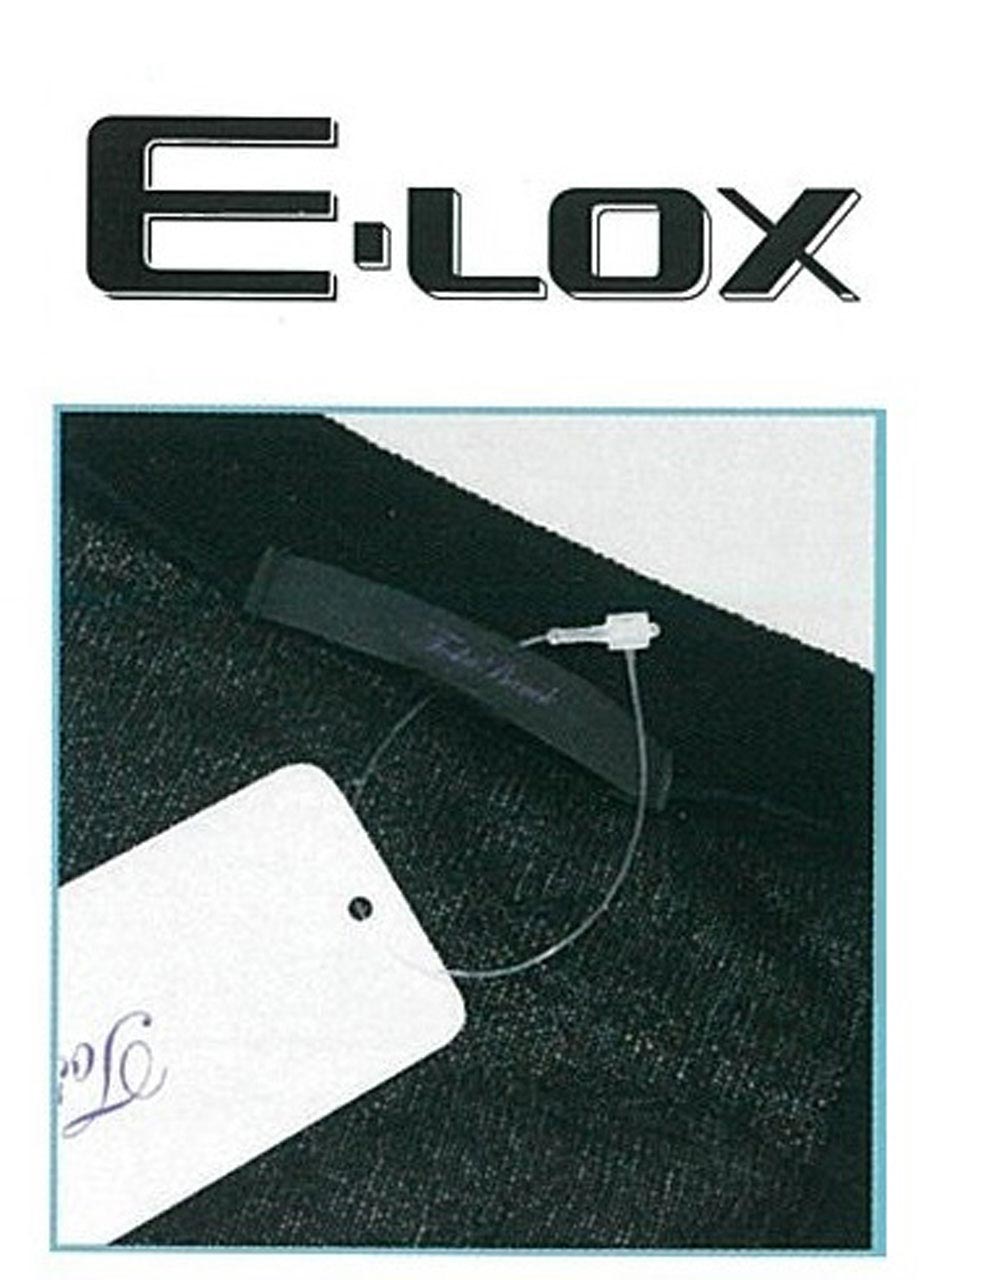 人気商品ランキング E-LOX Eロックス No.5 ナチュラル 5000本 約13cm トスカバノック社製 １ケース １箱 